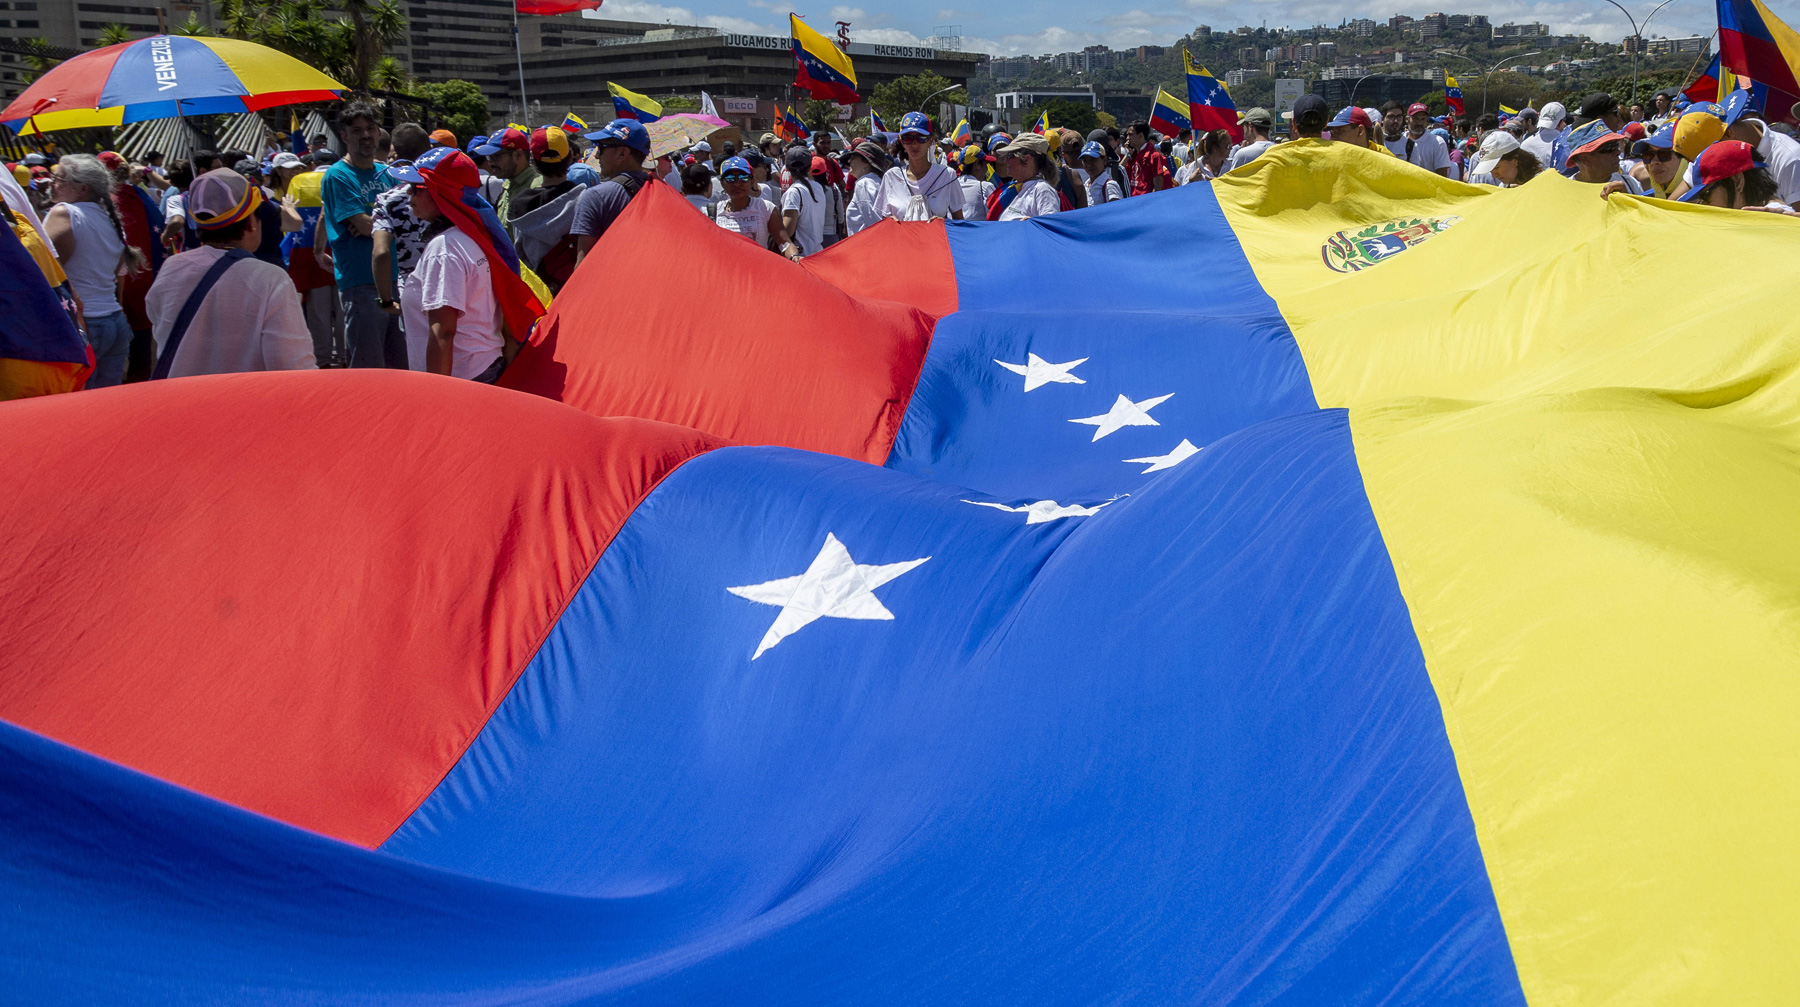 Спецпредставитель США Эллиотт Абрамс отметил, что из-за режима Мадуро экономика страны в глубоком кризисе Фото: © GLOBAL LOOK Press / Jimmy Villalta / ZUMAPRESS.com